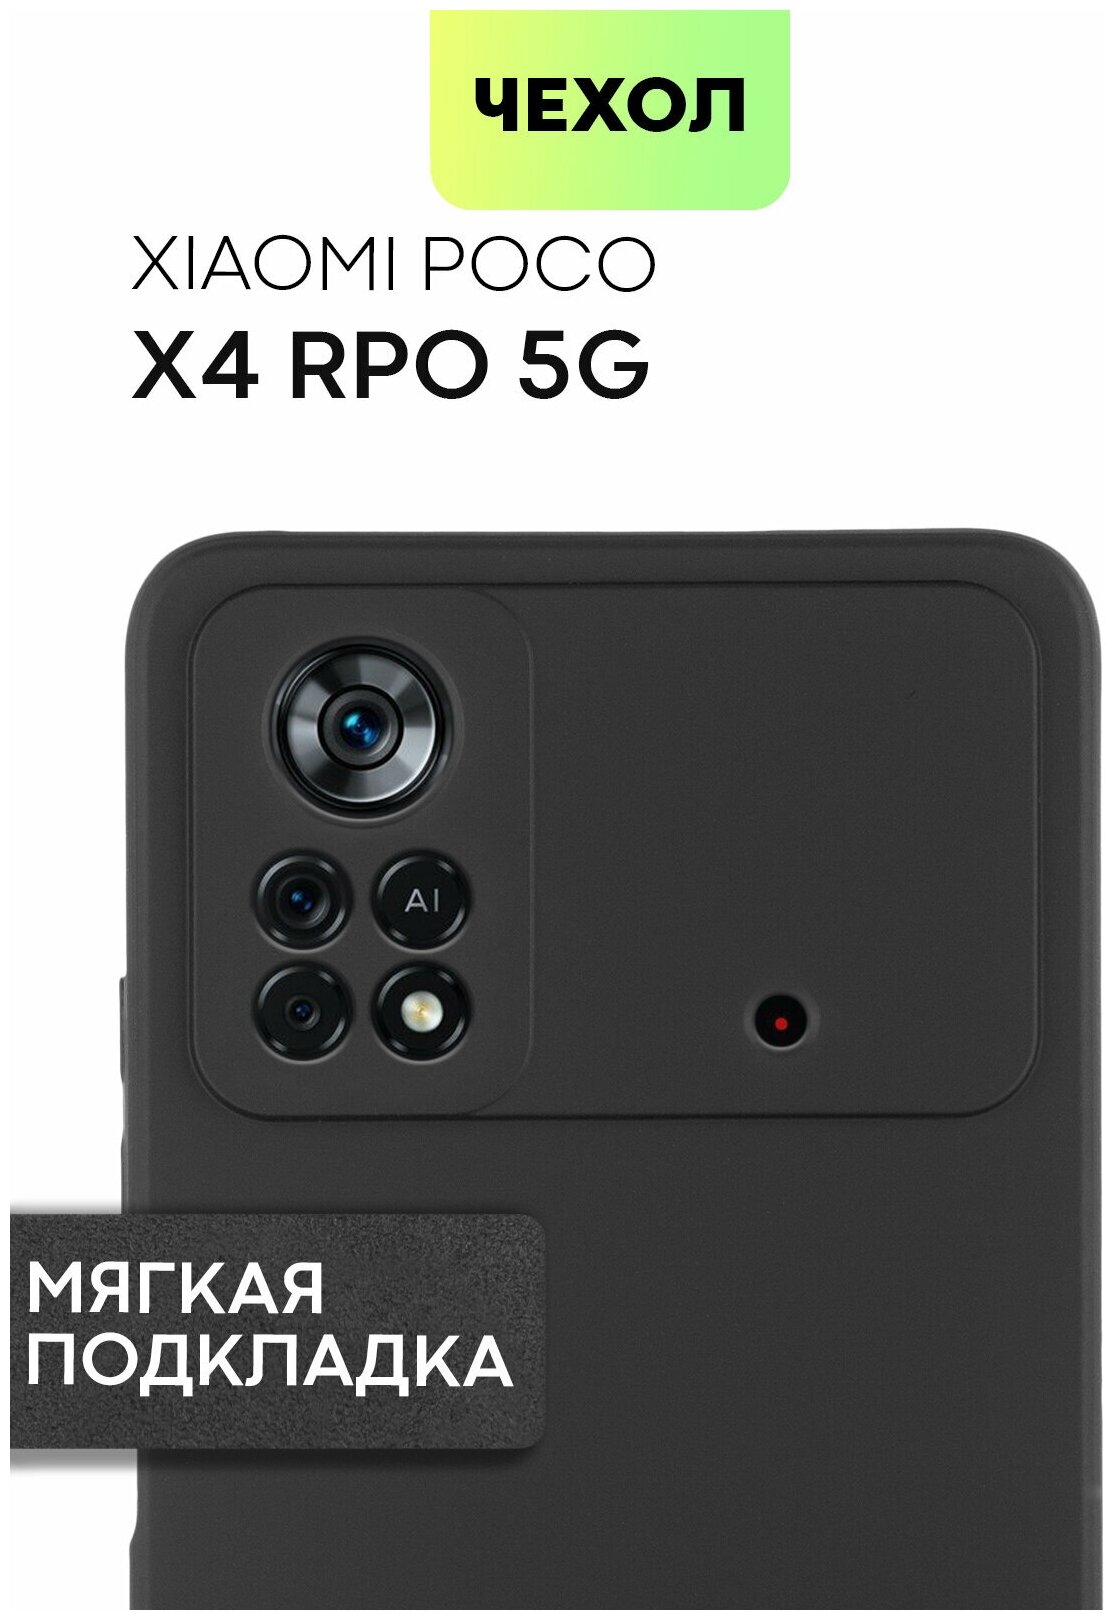 Матовый силиконовый чехол для Xiaomi Poco X4 Pro 5G (Сяоми Поко Икс 4 Про, Поко Х4 Про) с микрофиброй (мягкая подкладка), Soft-touch покрытием, черный